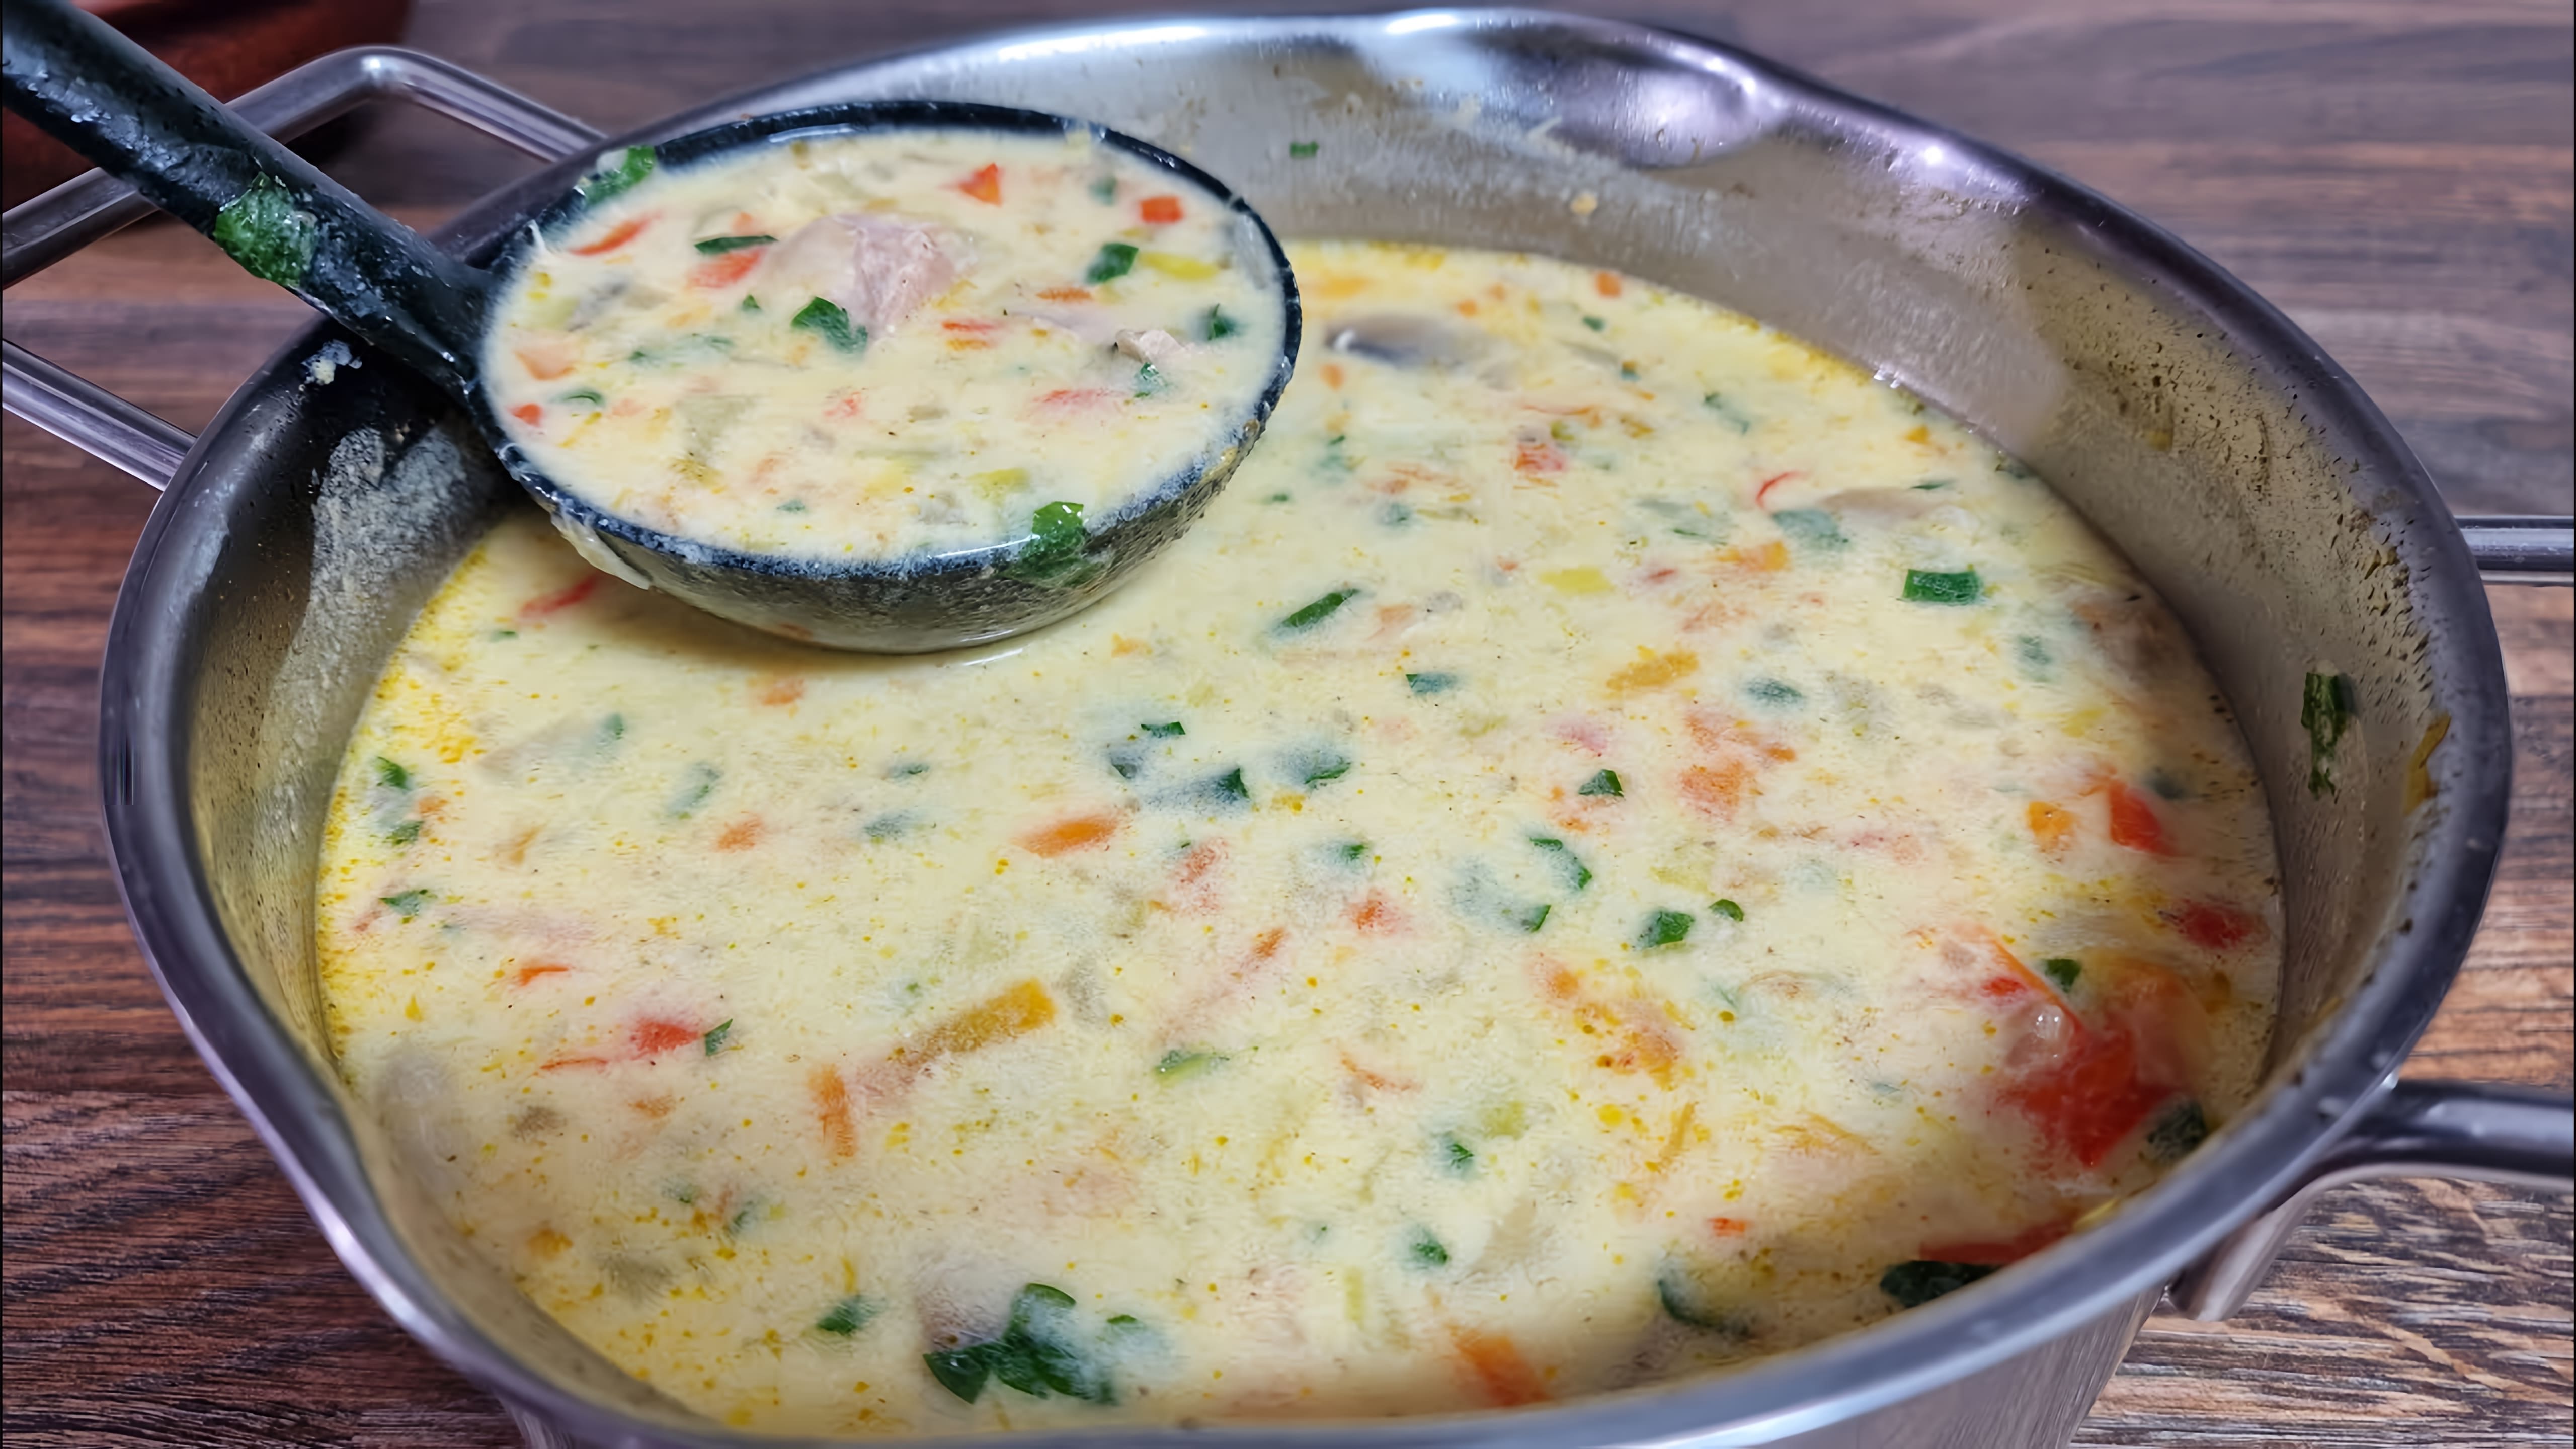 В этом видео демонстрируется процесс приготовления норвежской сливочной суповой смеси, которая считается одной из самых вкусных и удивительных супов